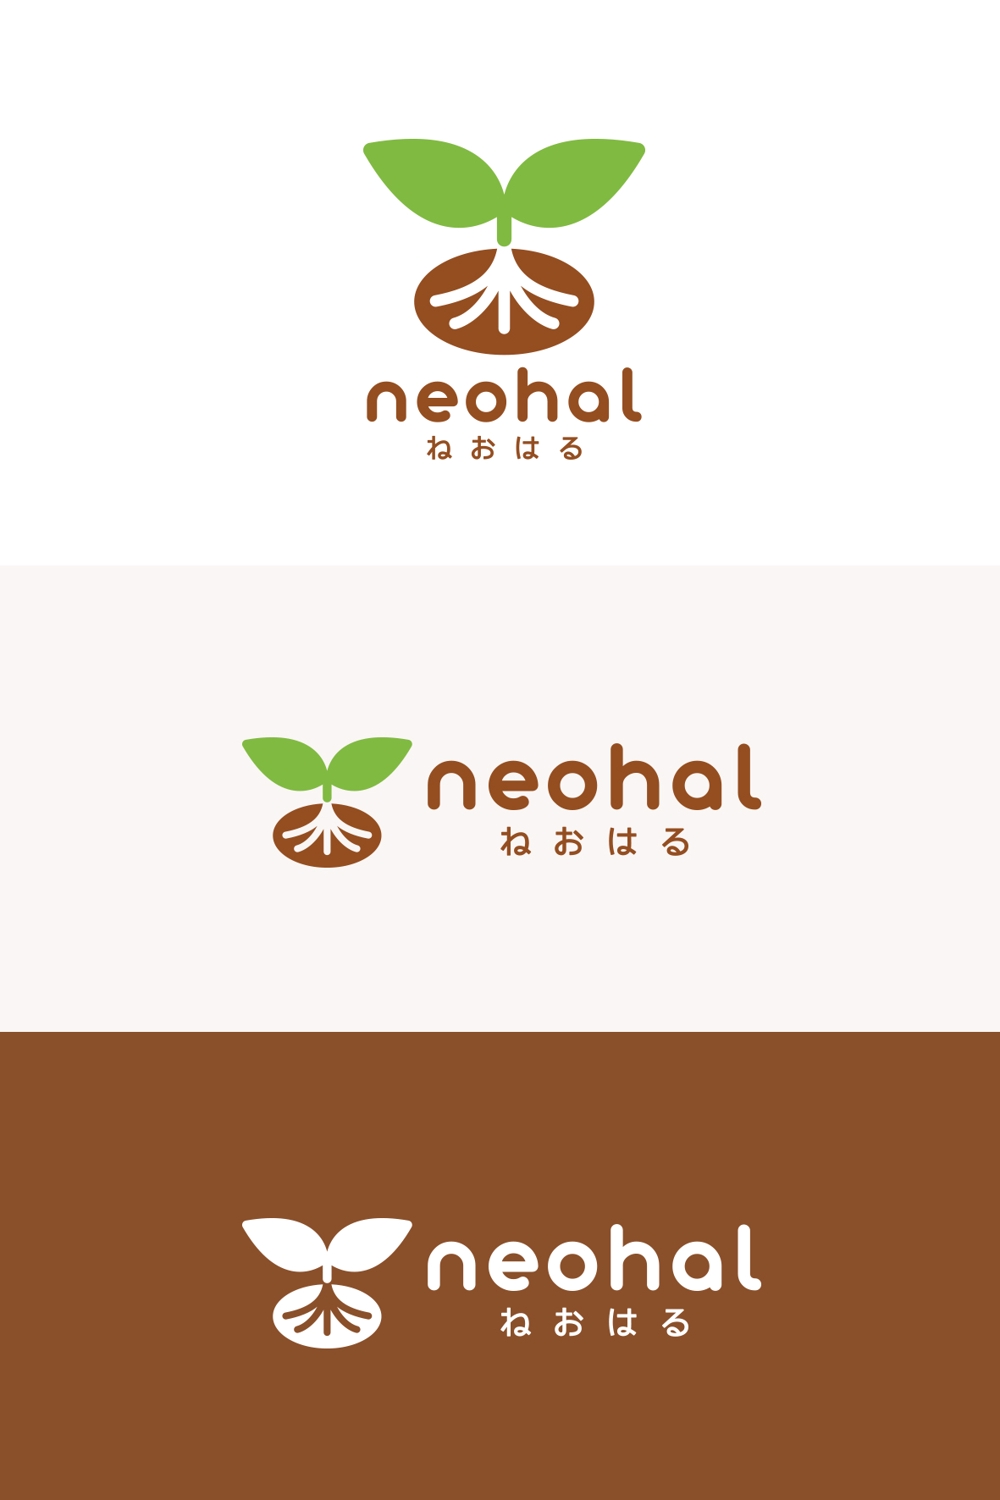 障がい者の就労支援事業所「株式会社neohal ねおはる」のロゴ